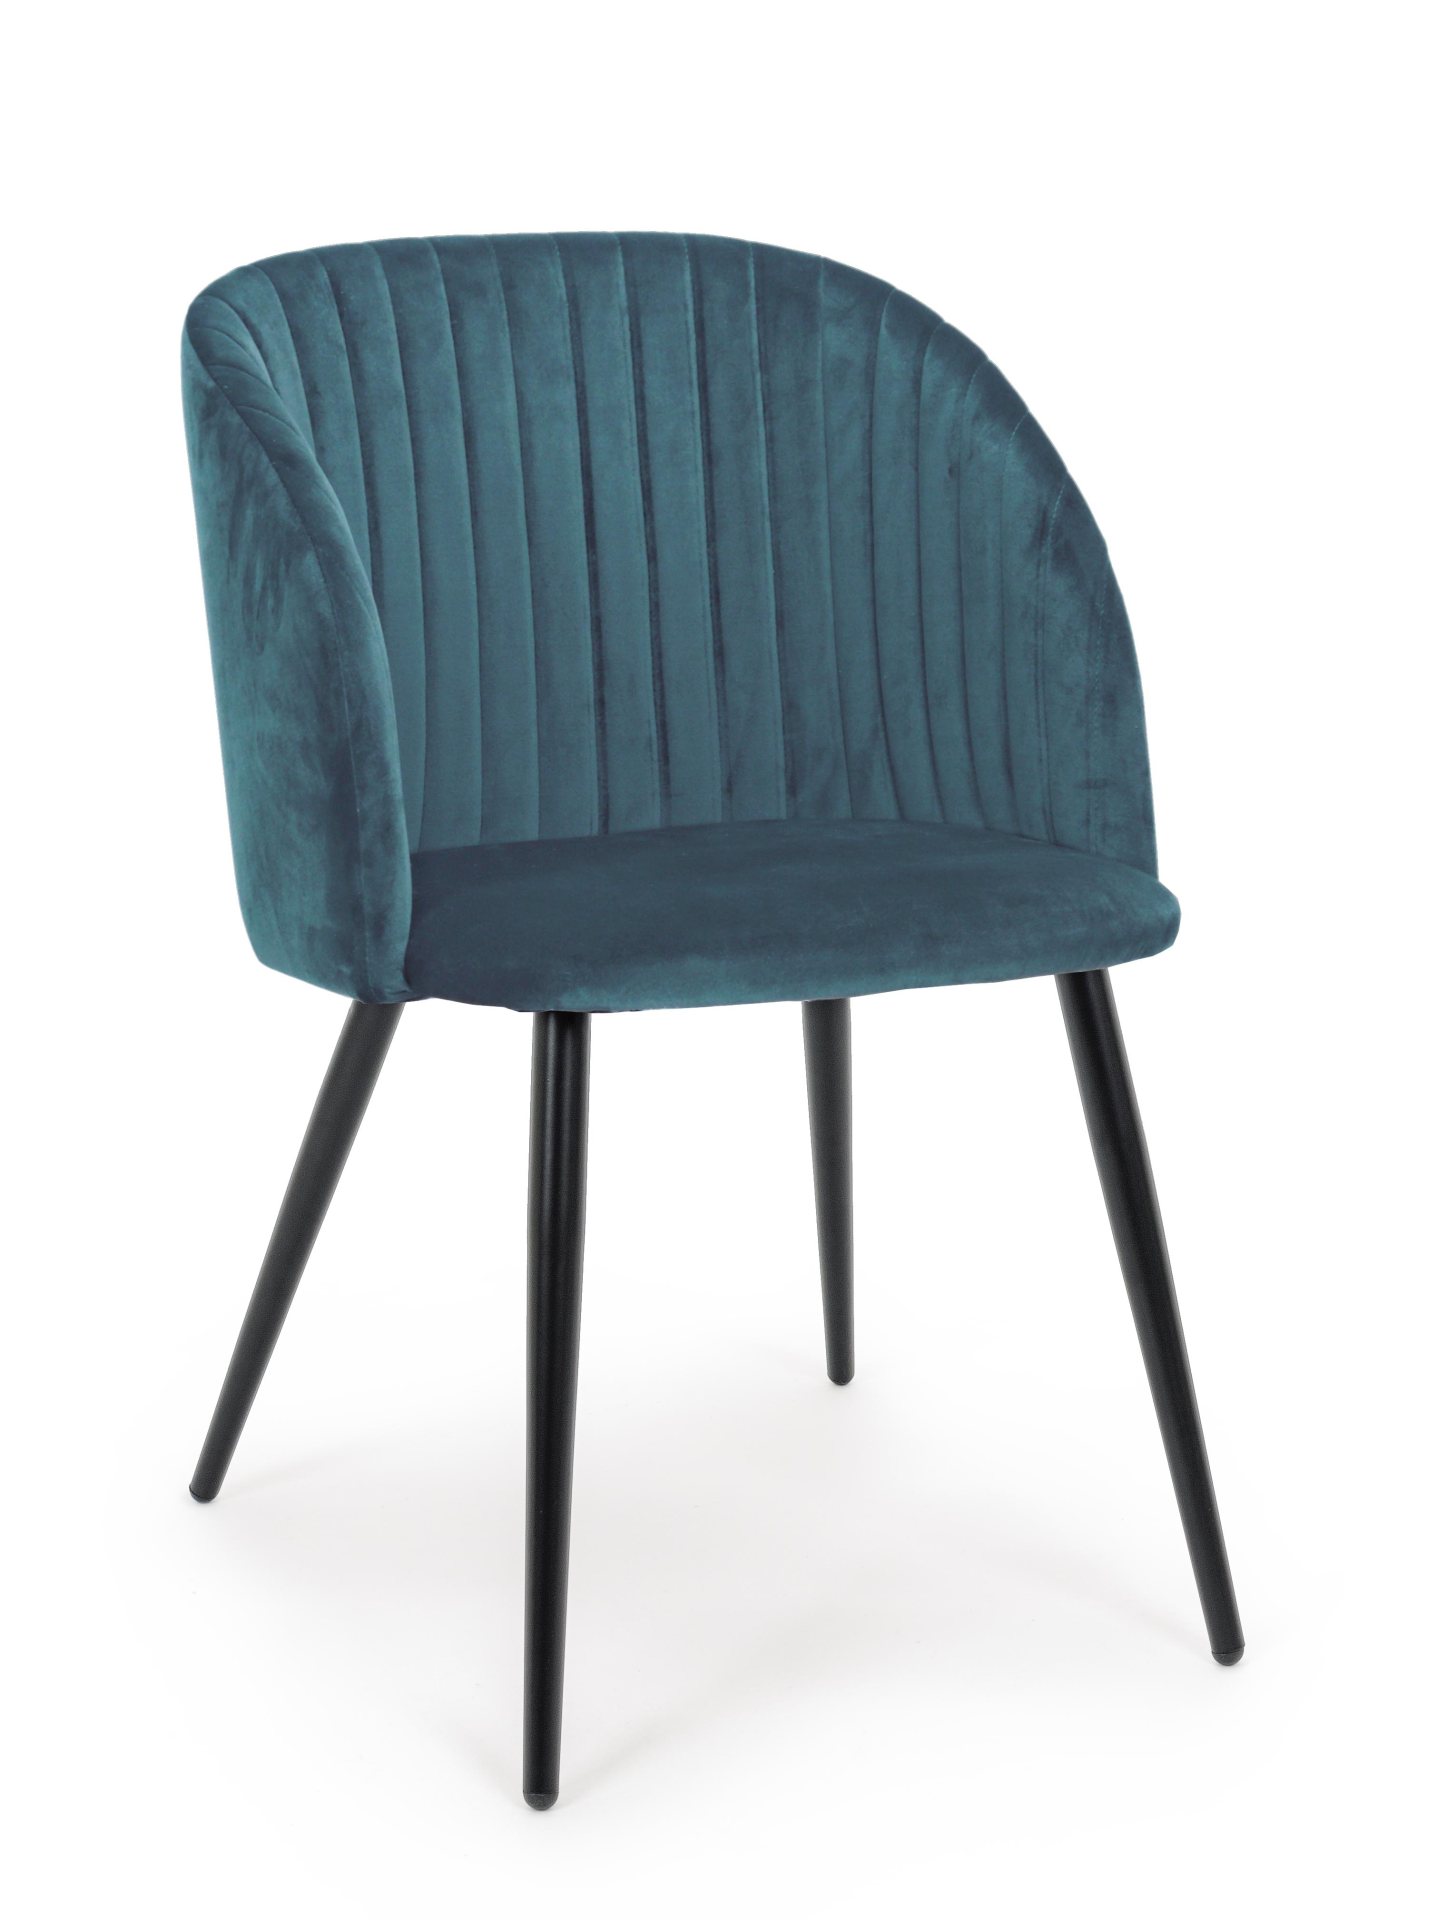 Der Esszimmerstuhl Queen überzeugt mit seinem modernem Design. Gefertigt wurde der Stuhl aus einem Samt-Bezug, welcher einen blauen Farbton besitzt. Das Gestell ist aus Metall und ist Schwarz. Die Sitzhöhe beträgt 49 cm.